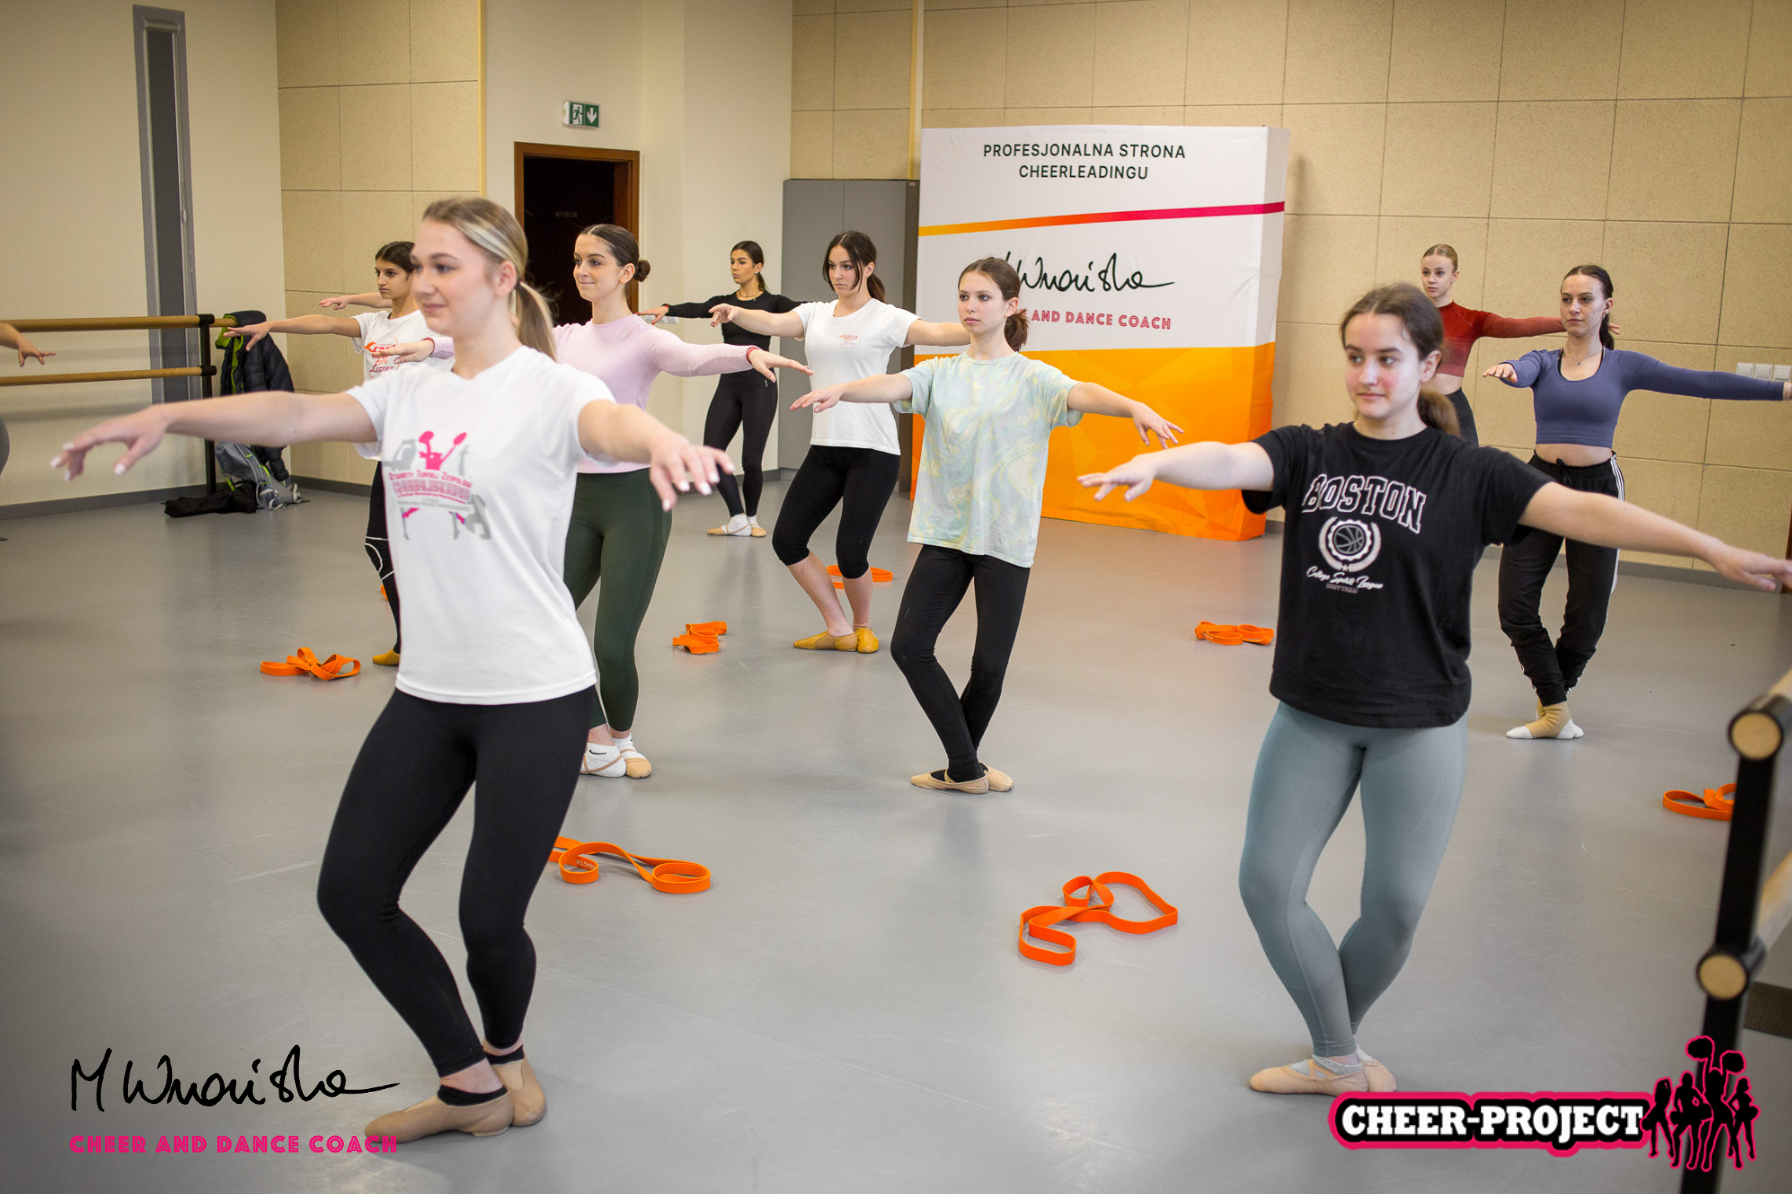 tancerki ćwiczą pozycje baletowe